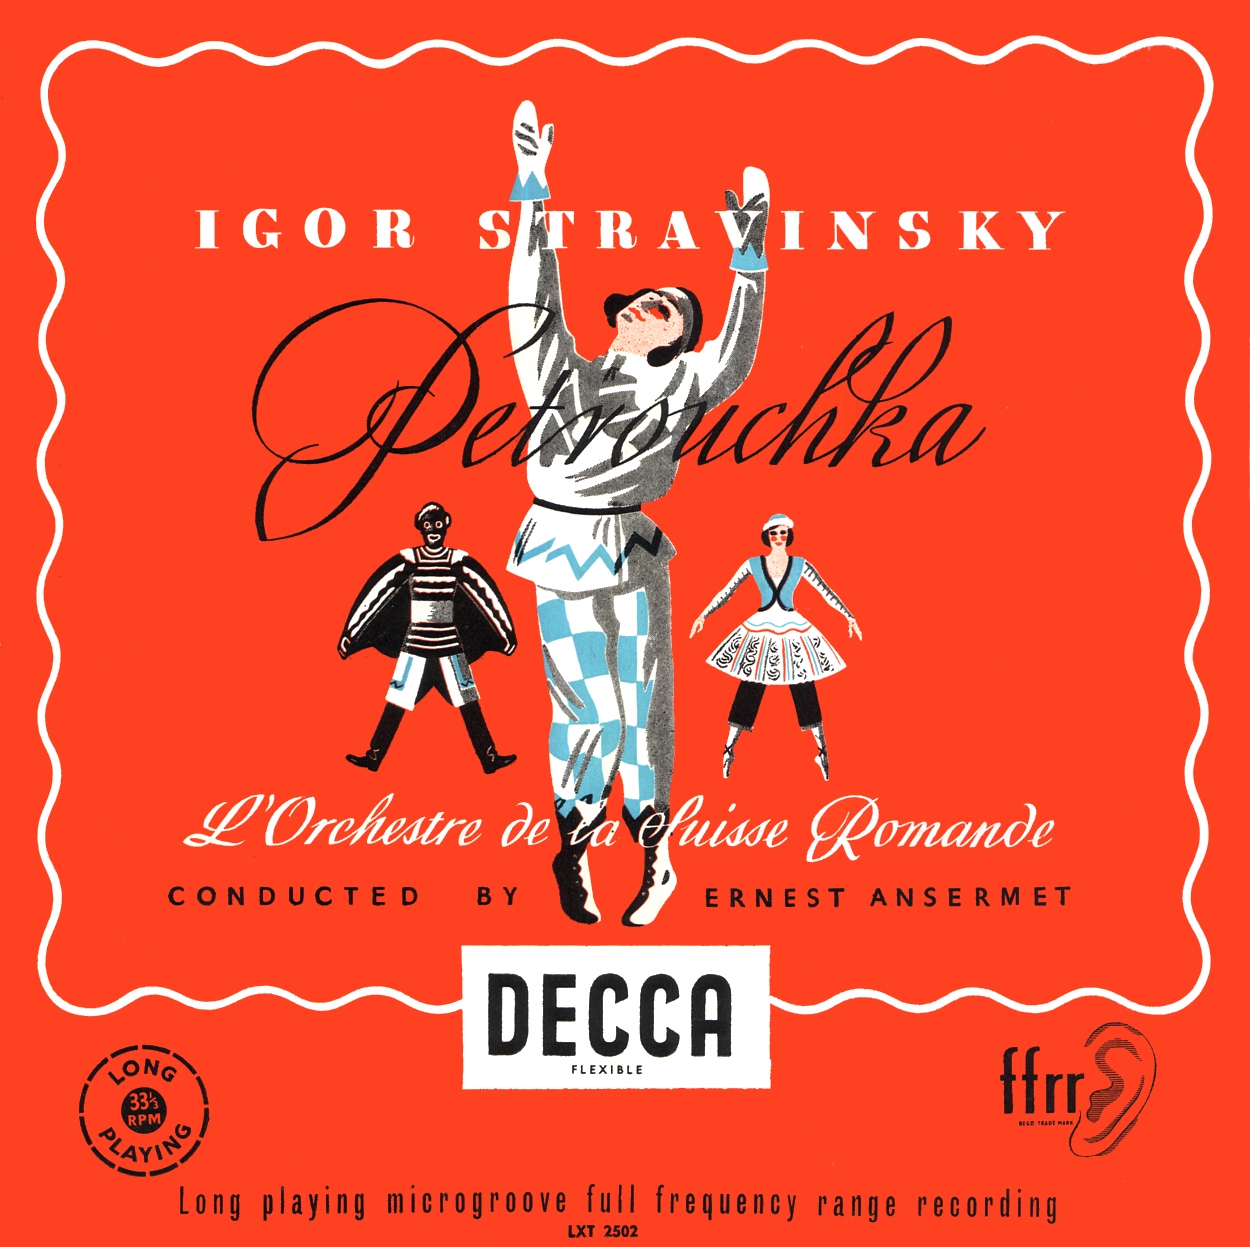 Stravinsky Petrushka